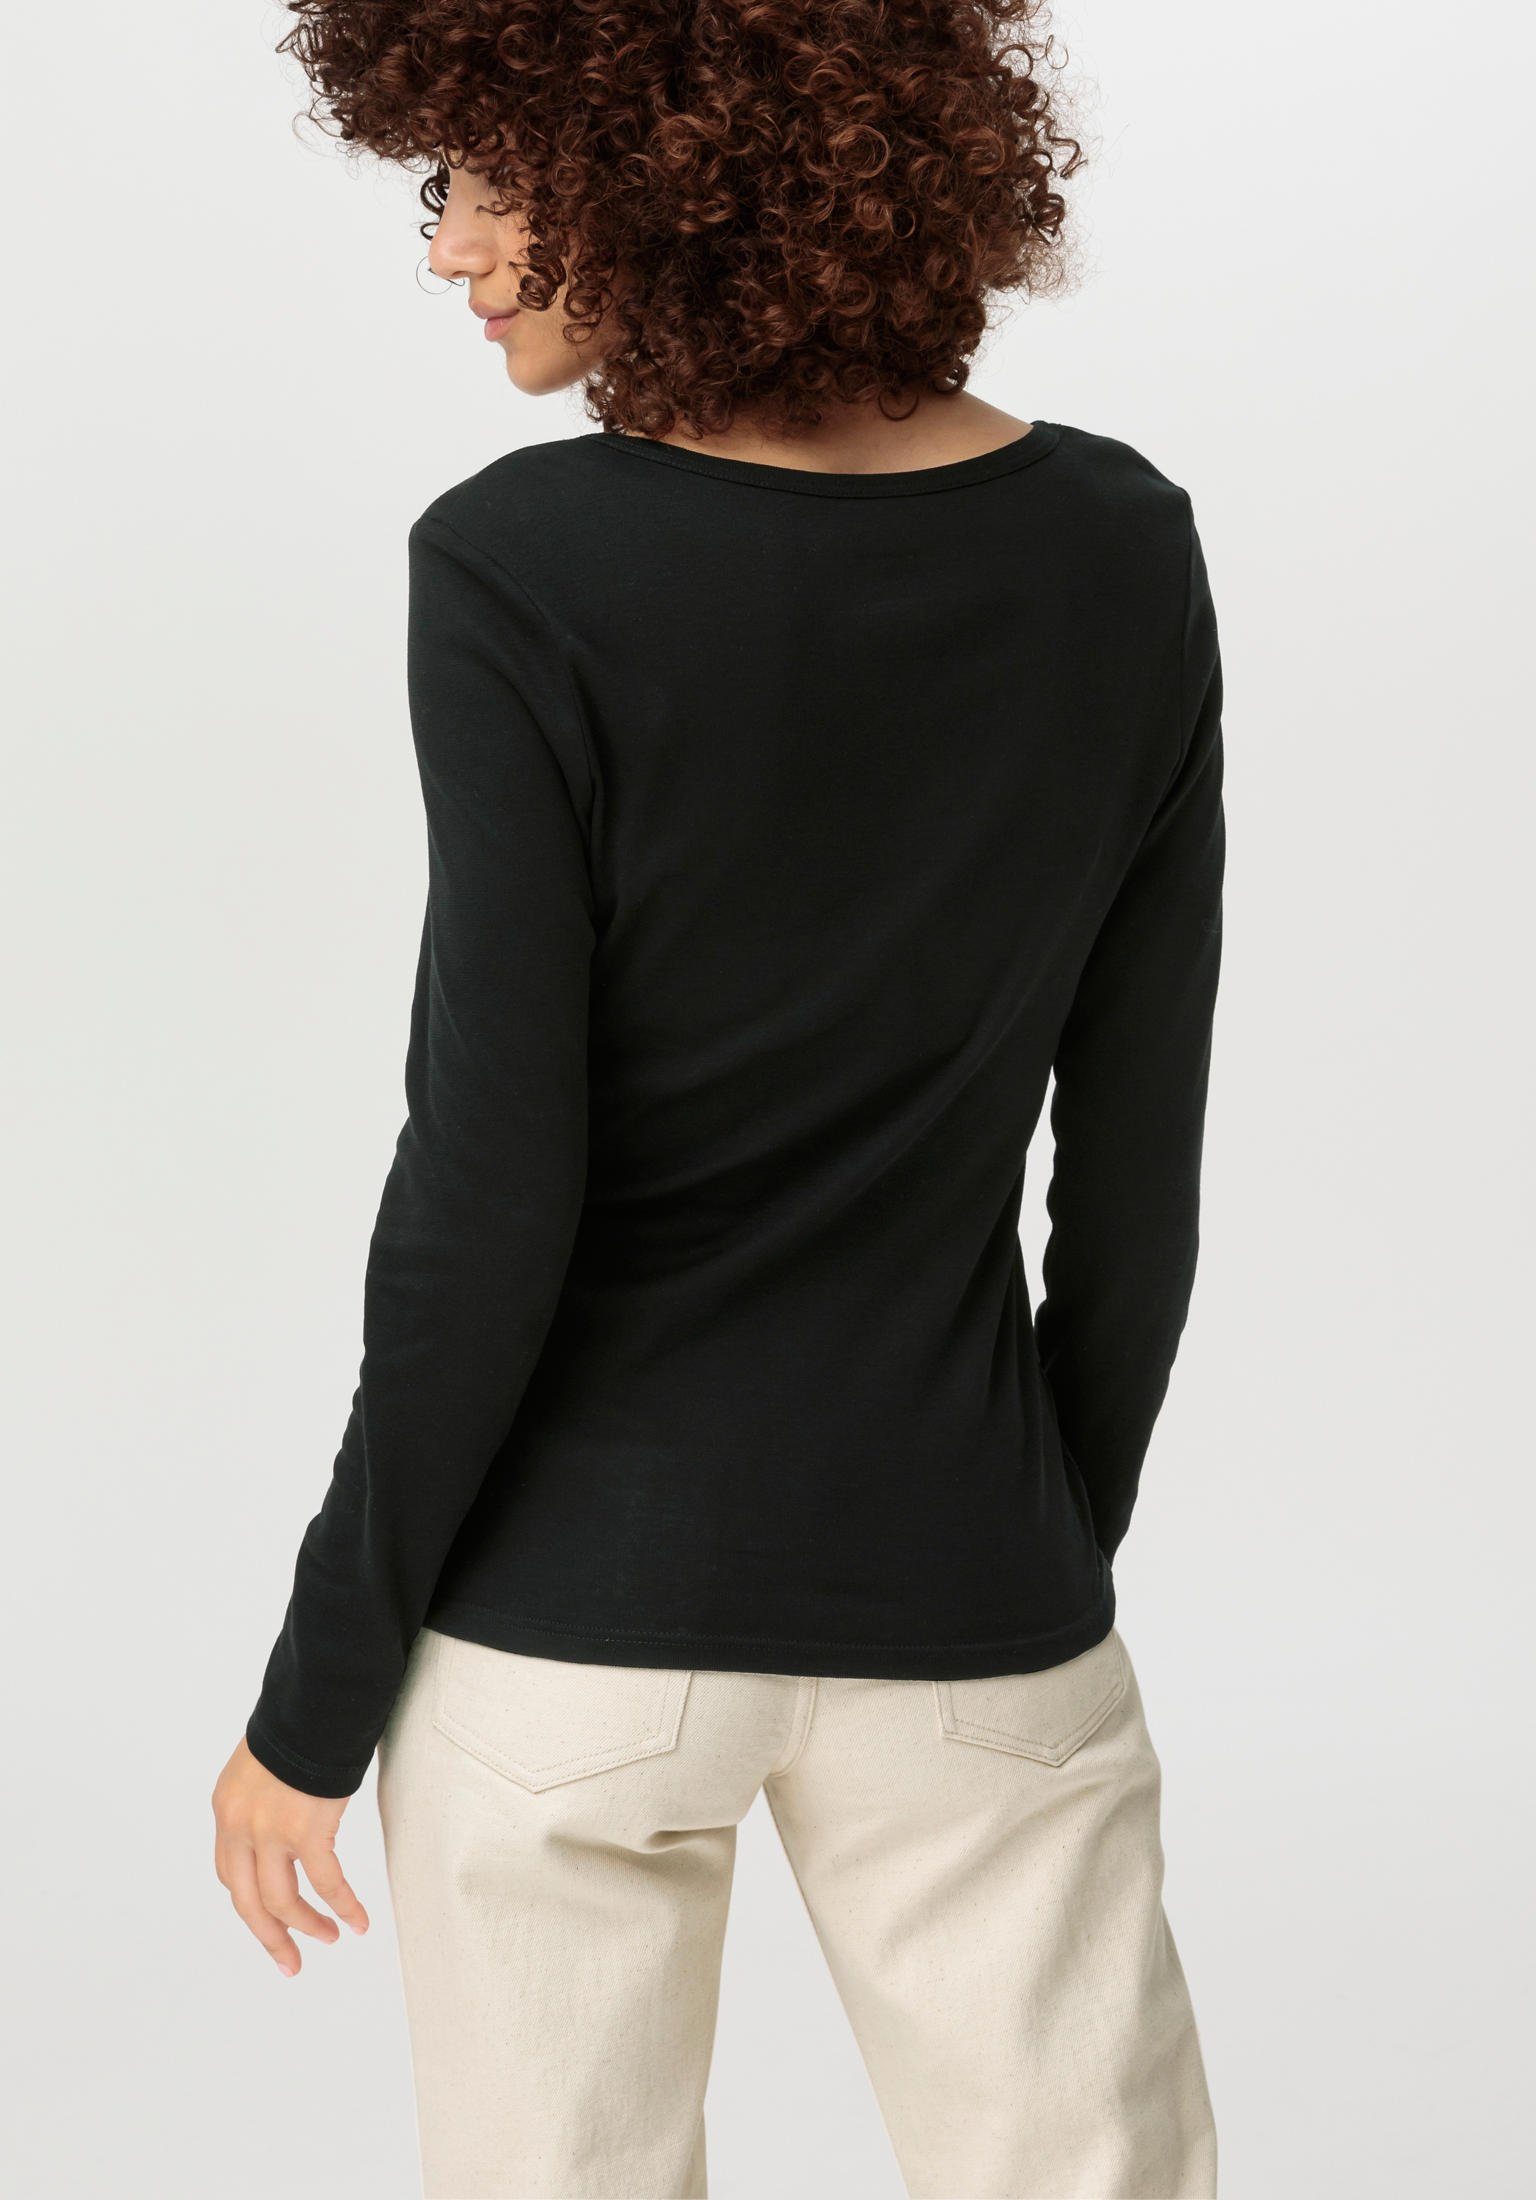 Langarm schwarz T-Shirt Bio-Baumwolle reiner Hessnatur aus